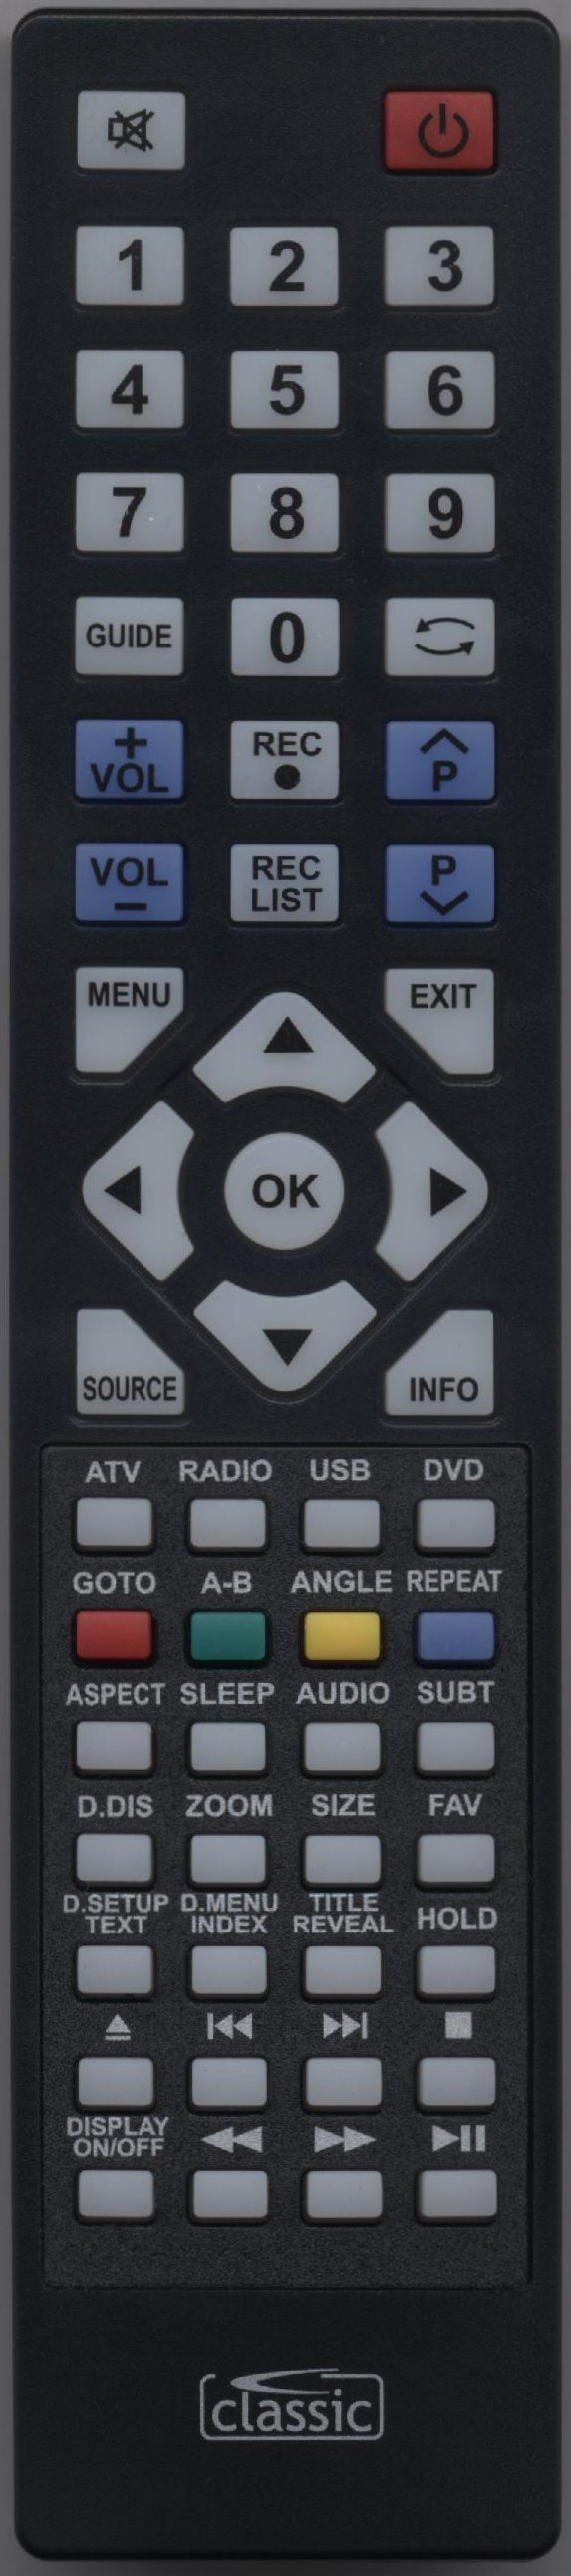 UMC M1928EGBTCDUPUK Remote Control